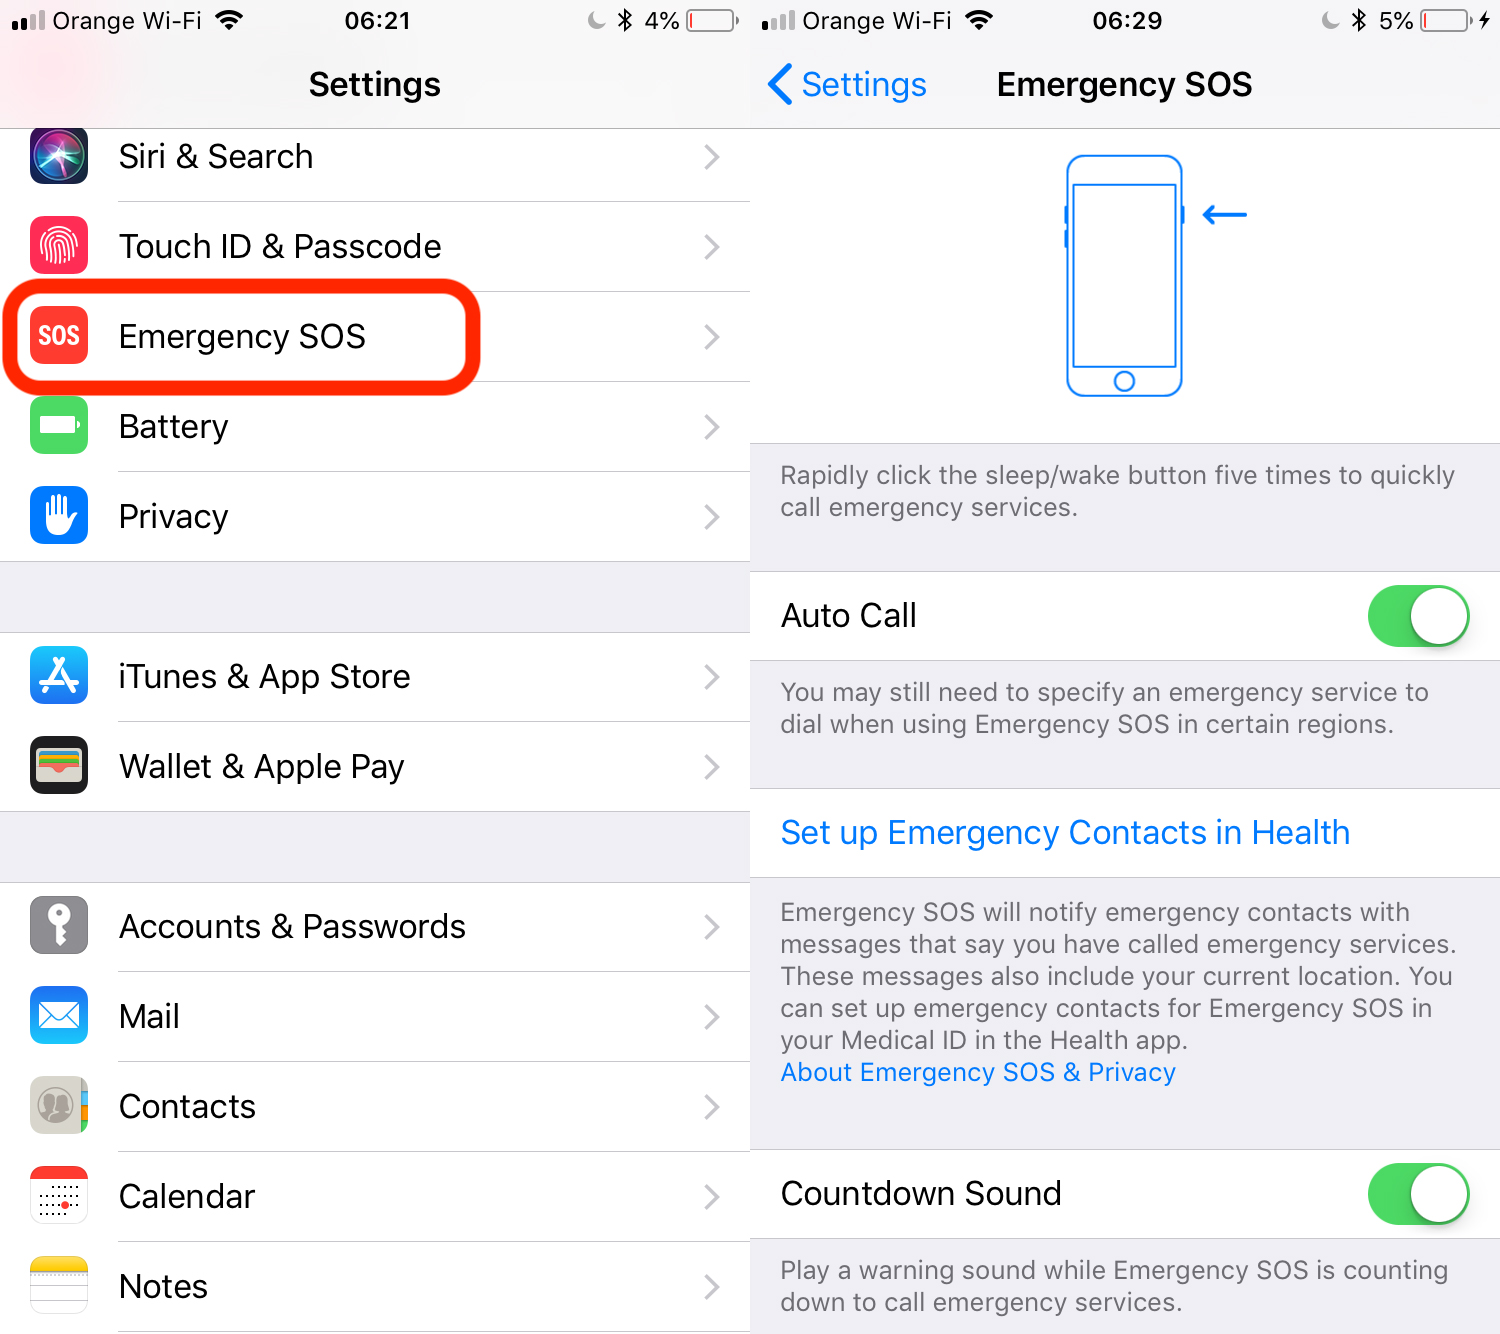 Nowe opcje ratowania życia (SOS) zostaną wprowadzone w dniu iOS 12